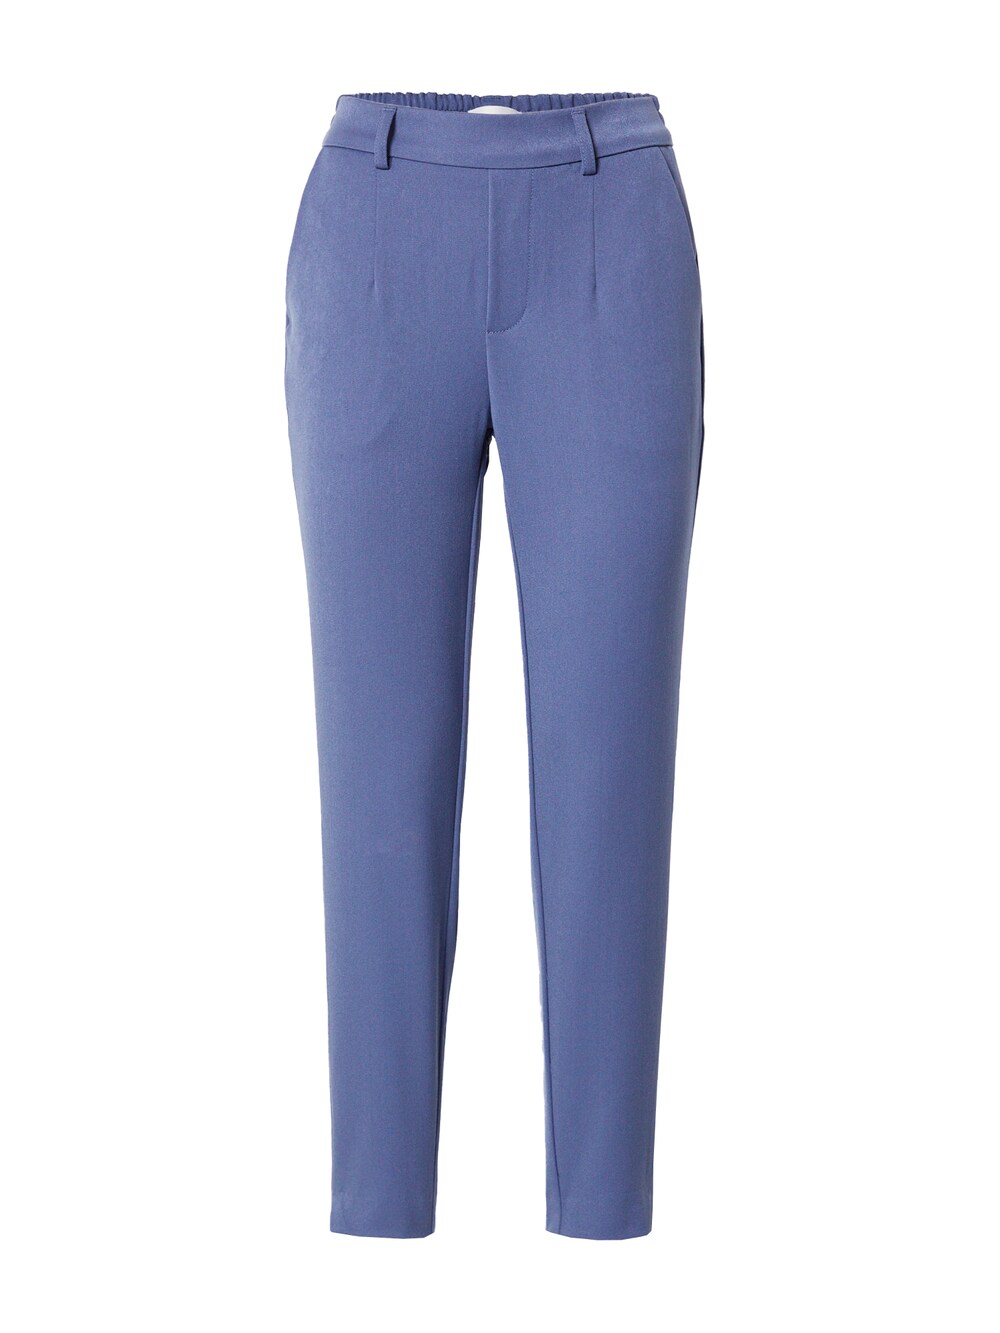 Узкие брюки со складками спереди Object, синий узкие брюки со складками спереди fransa curve stretch коричневый